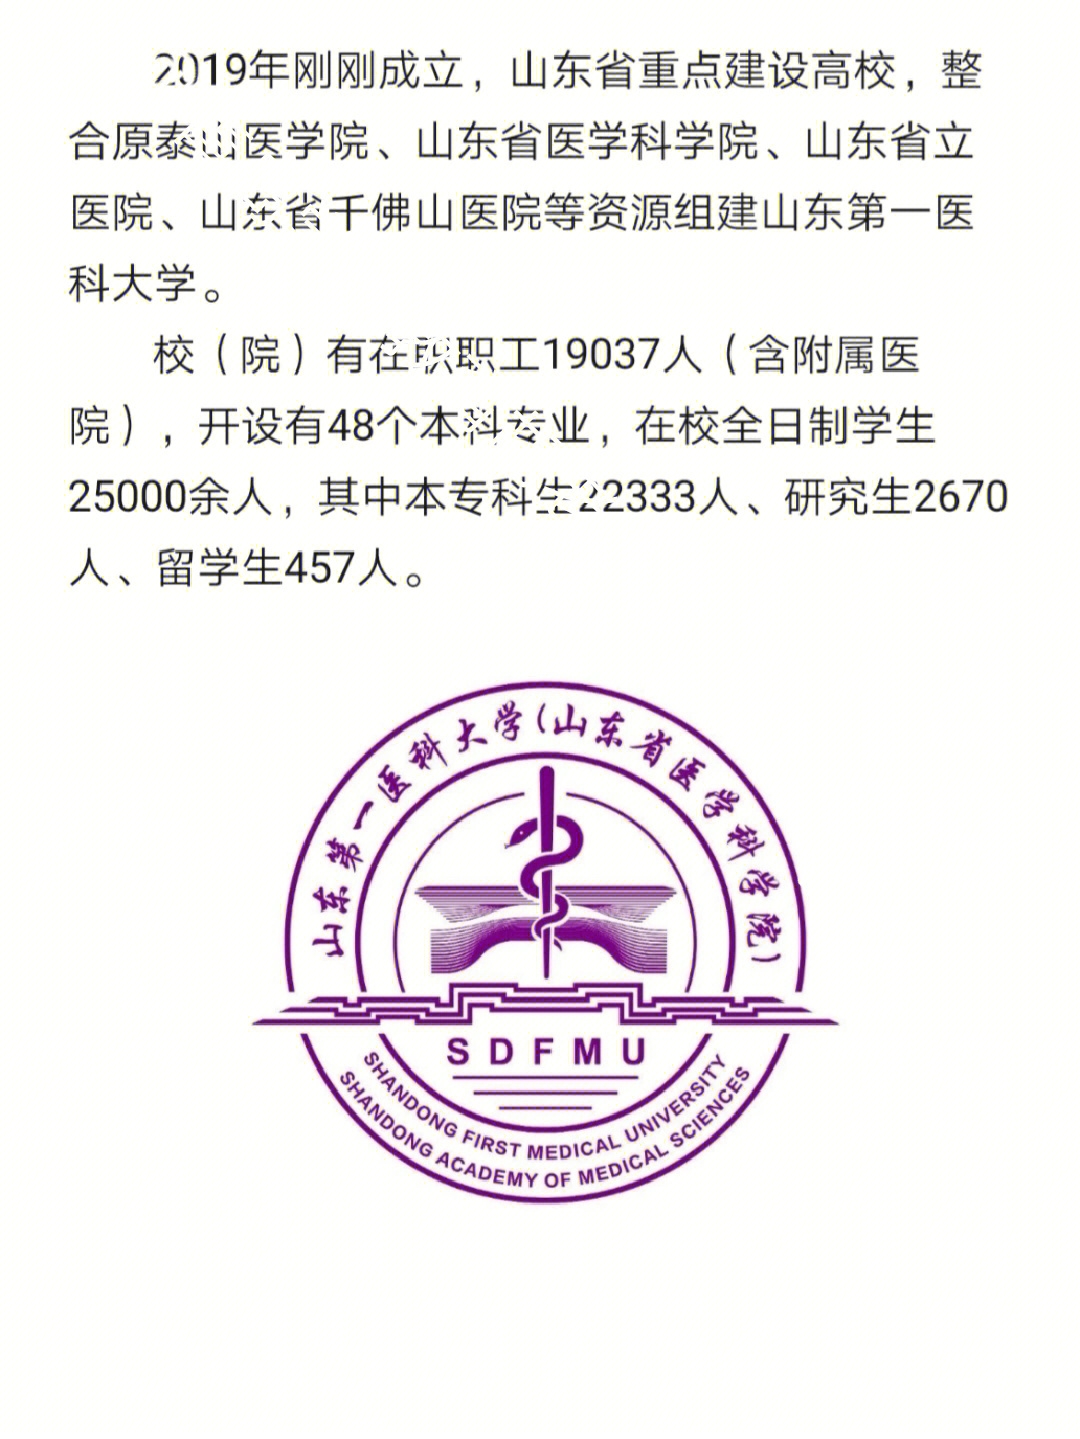 泰山医学院校徽图片